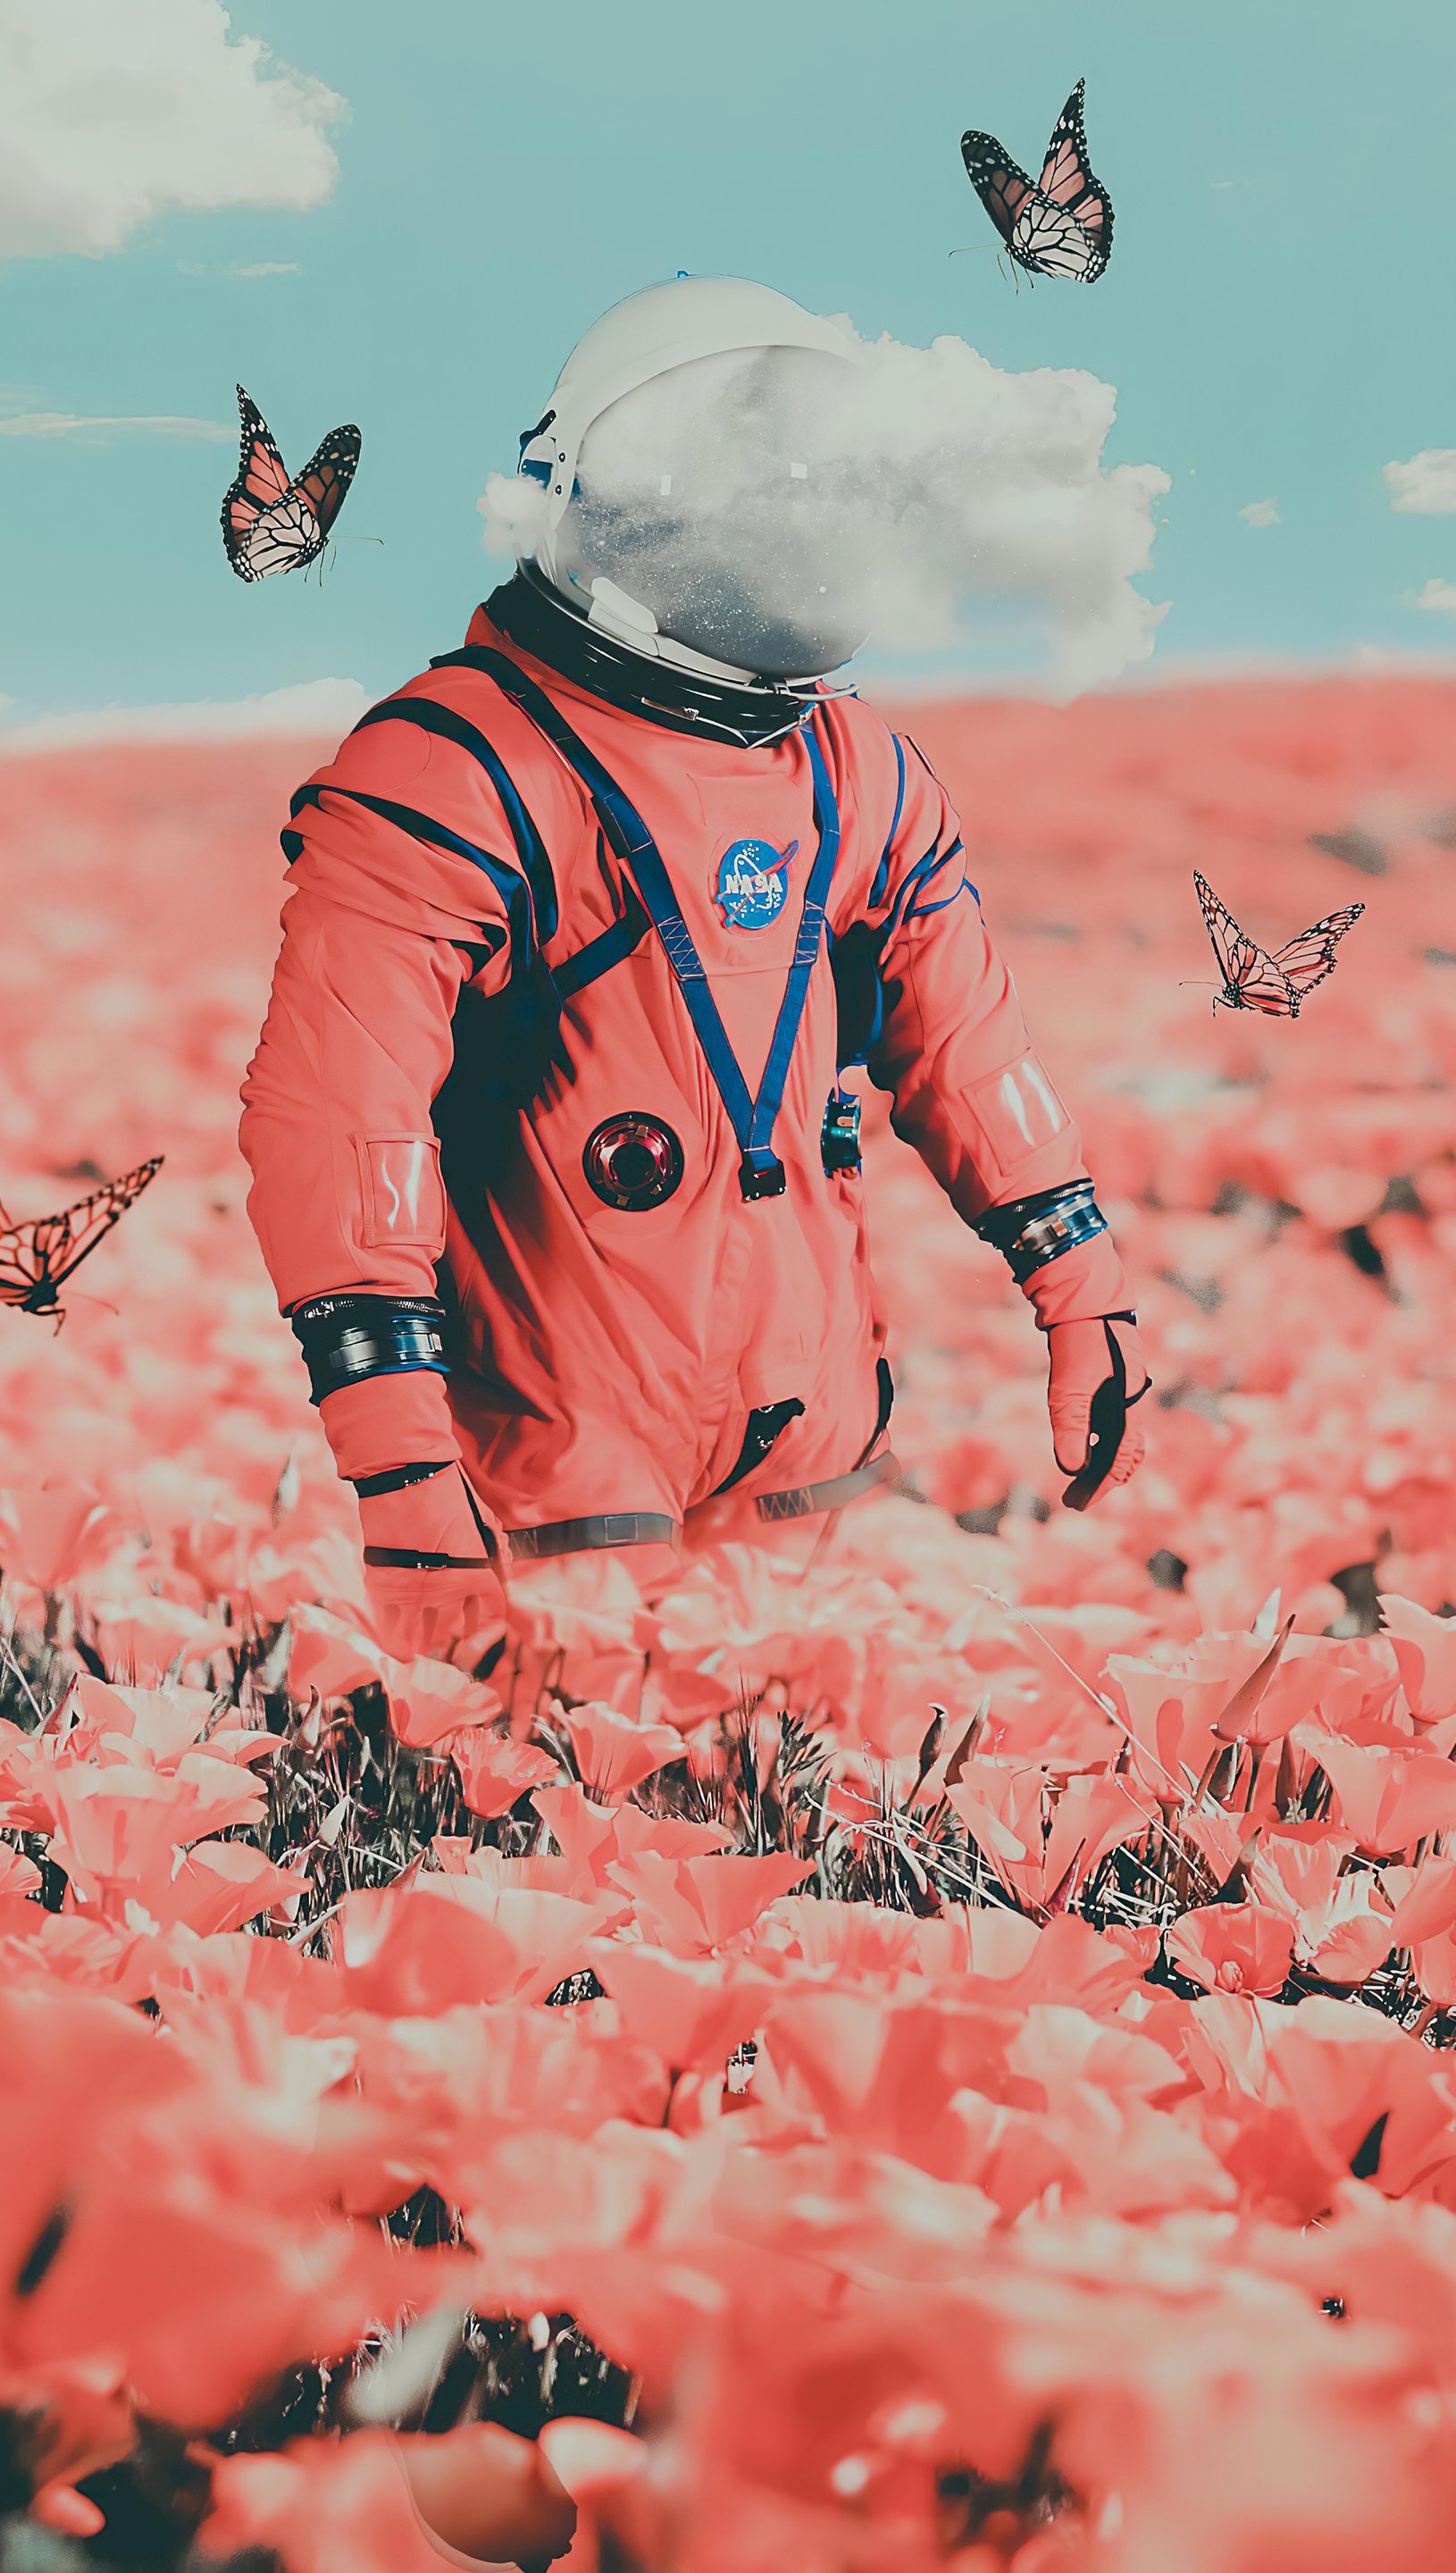 Fondos de pantalla Astronauta entre flores y mariposas Vertical